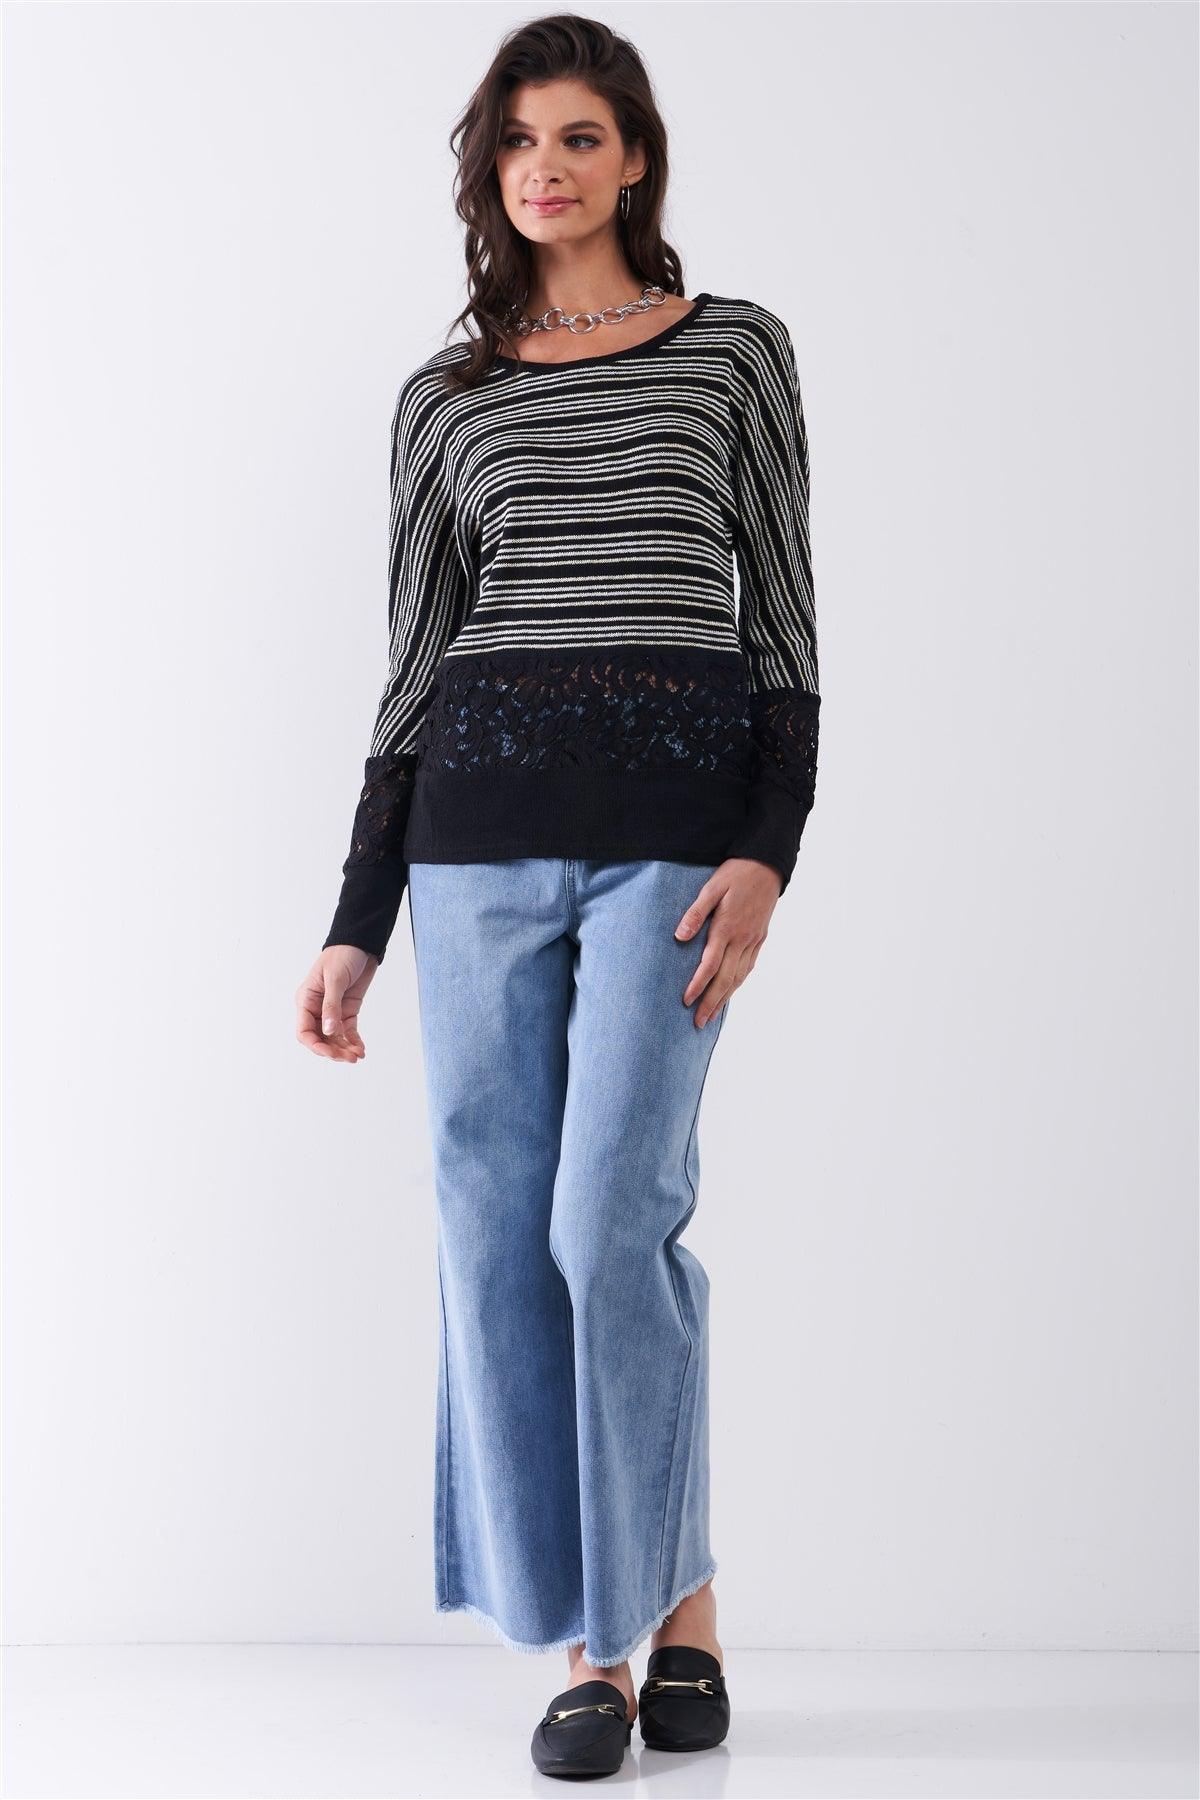 Black Striped Glitter Weave Crochet Trim Detail Long Sleeve Sweater Top /1-2-1